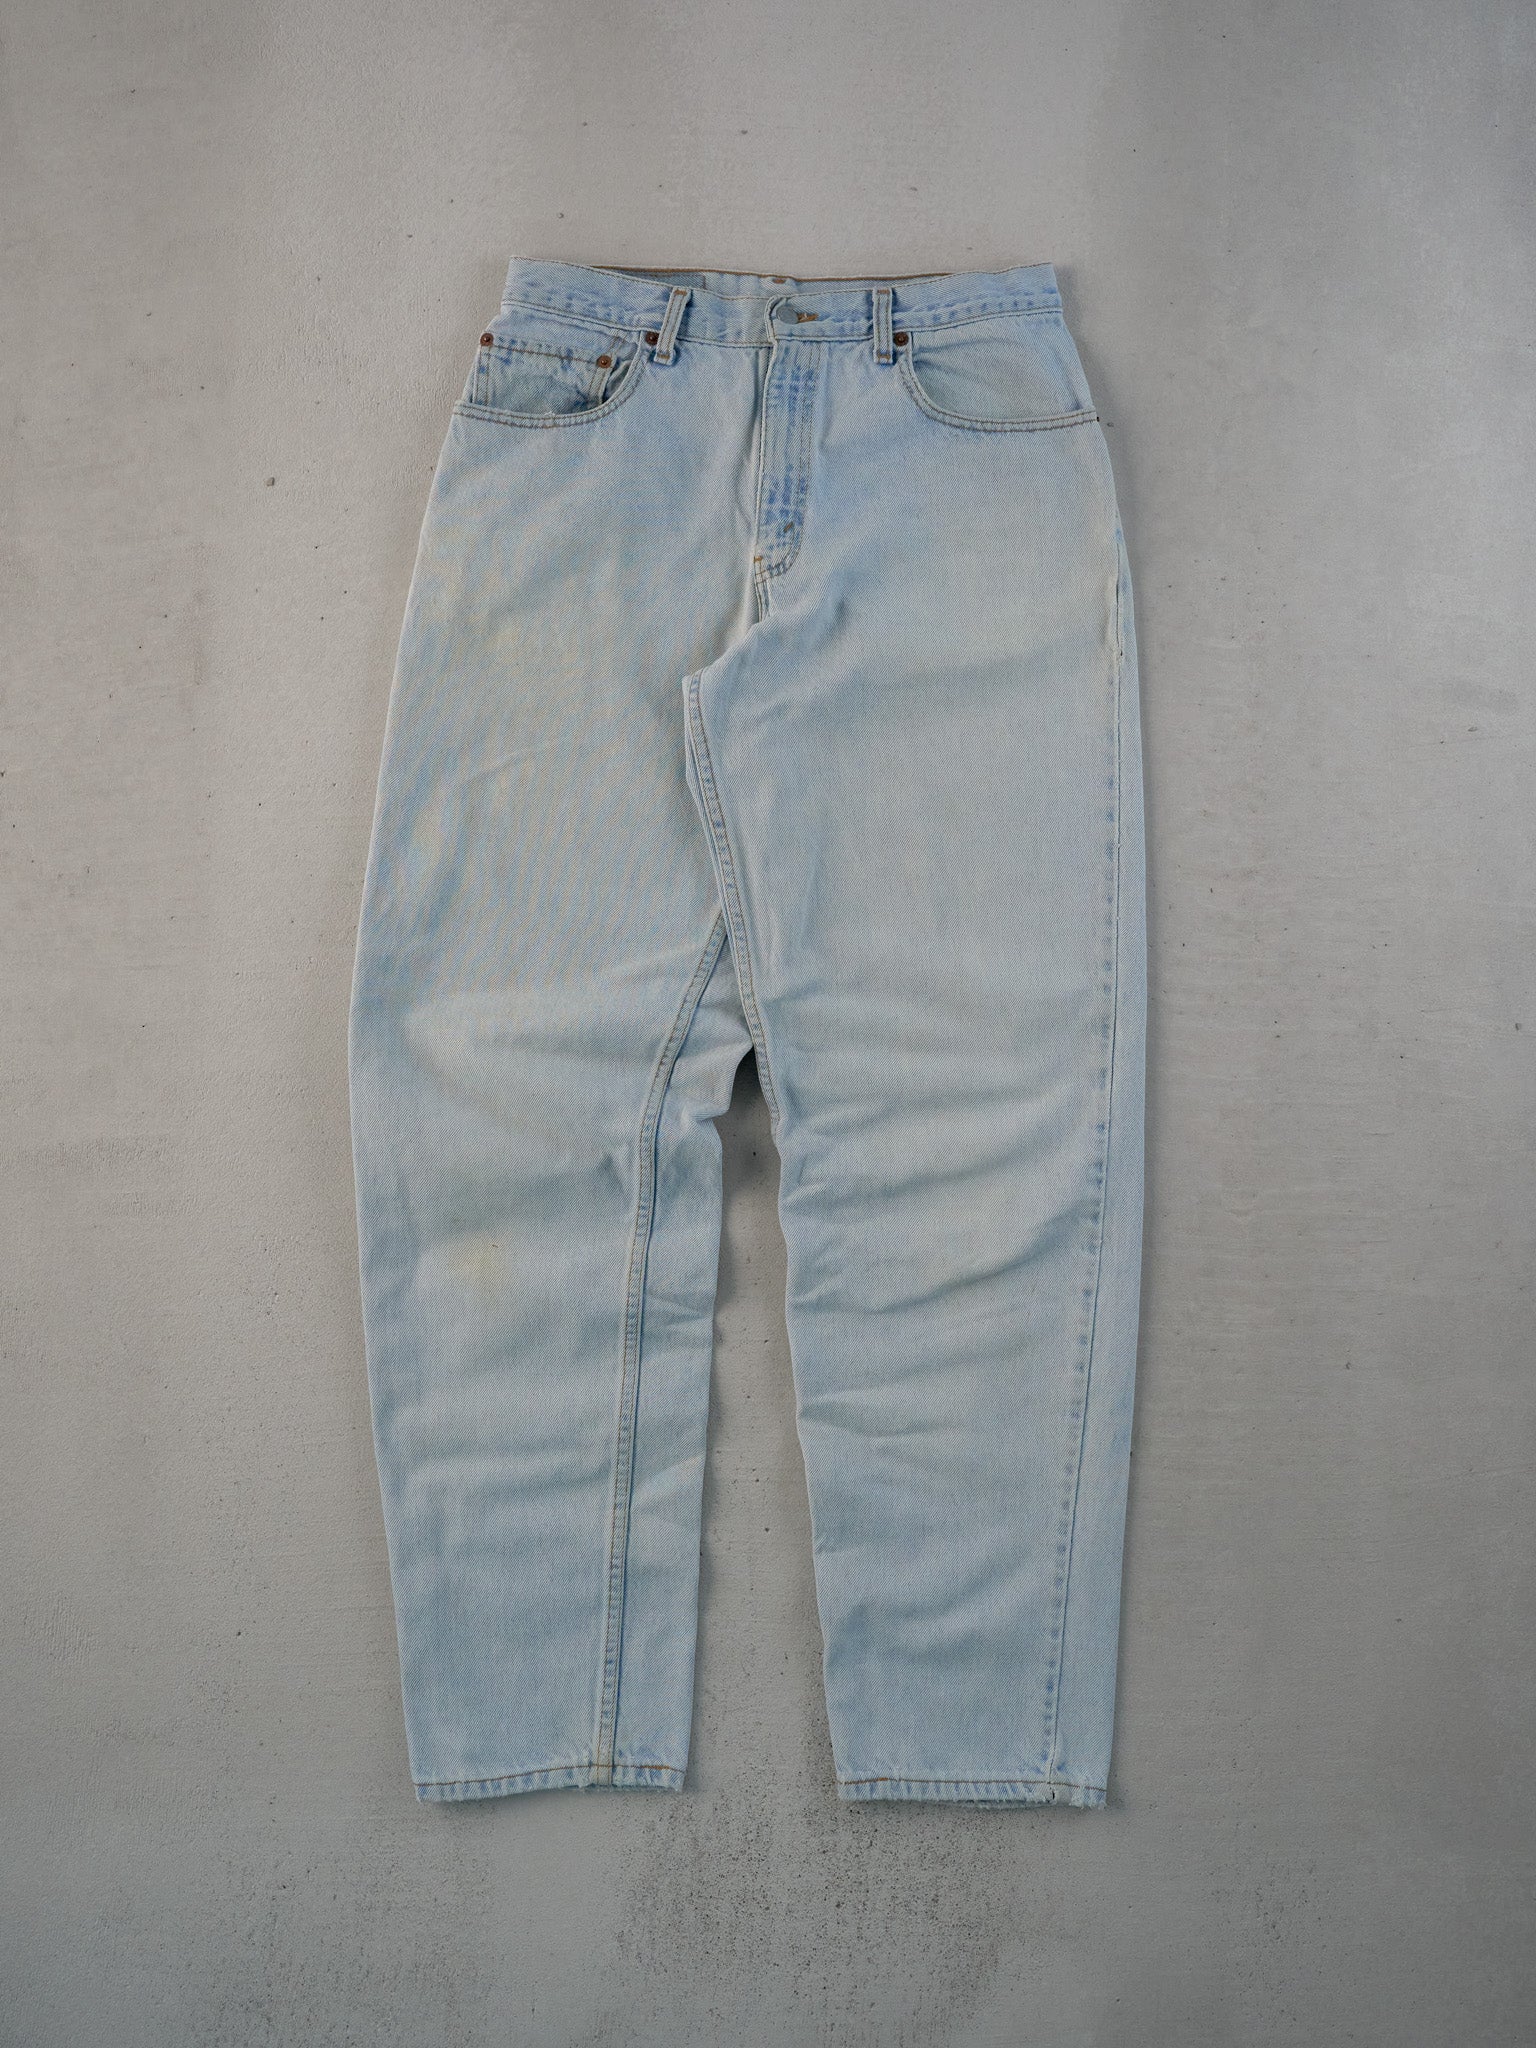 Vintage 90s Light Blue Levi's 560 Denim Jeans (31x32)